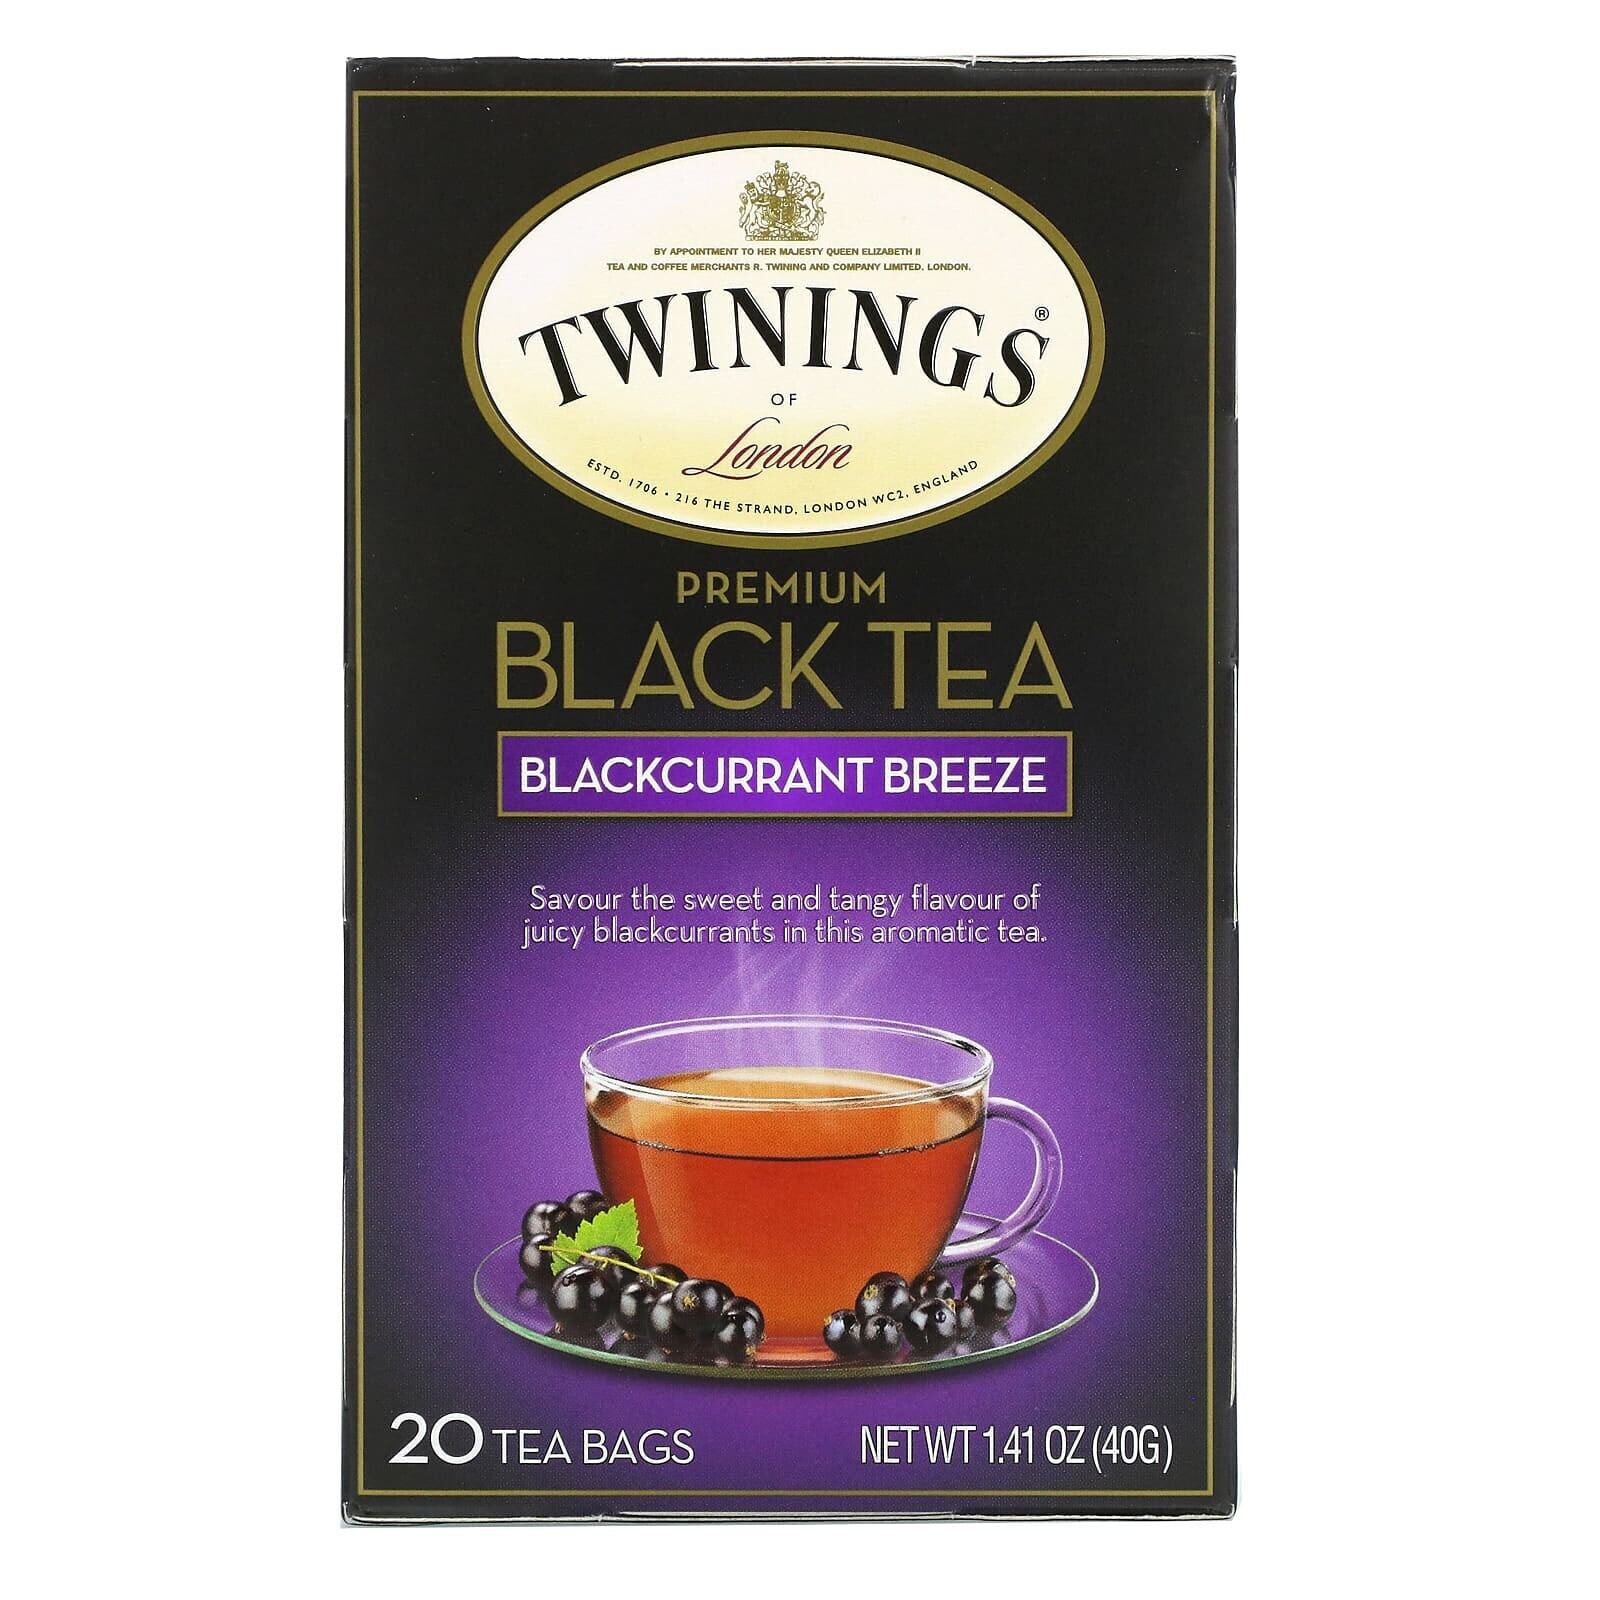 Premium Black Tea, Blackcurrant Breeze, 20 Tea Bags, 1.41 oz (40 g)